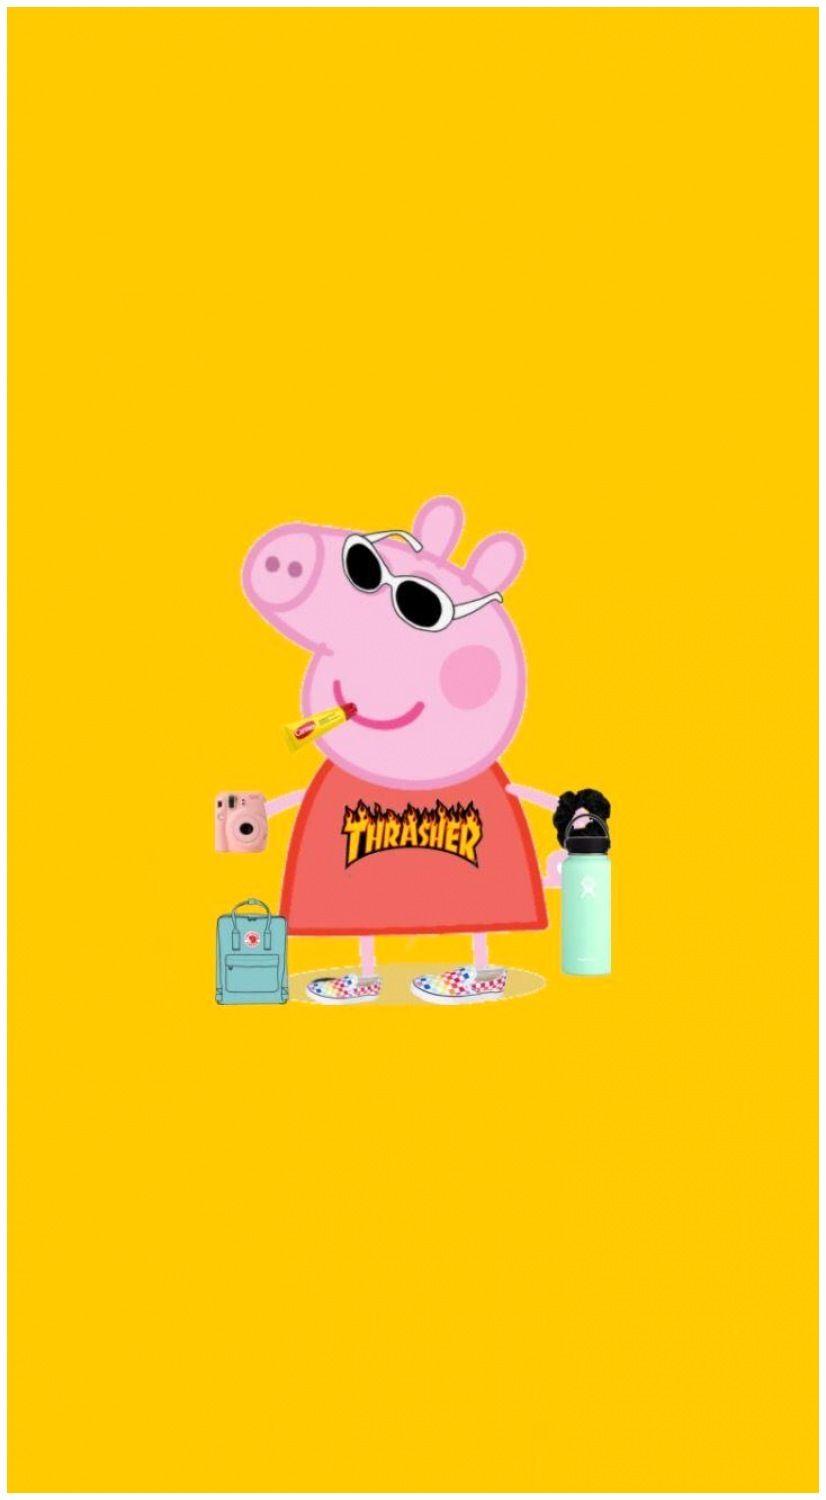 Baddie Peppa Pig Wallpapers - Top Free Baddie Peppa Pig Backgrounds -  WallpaperAccess